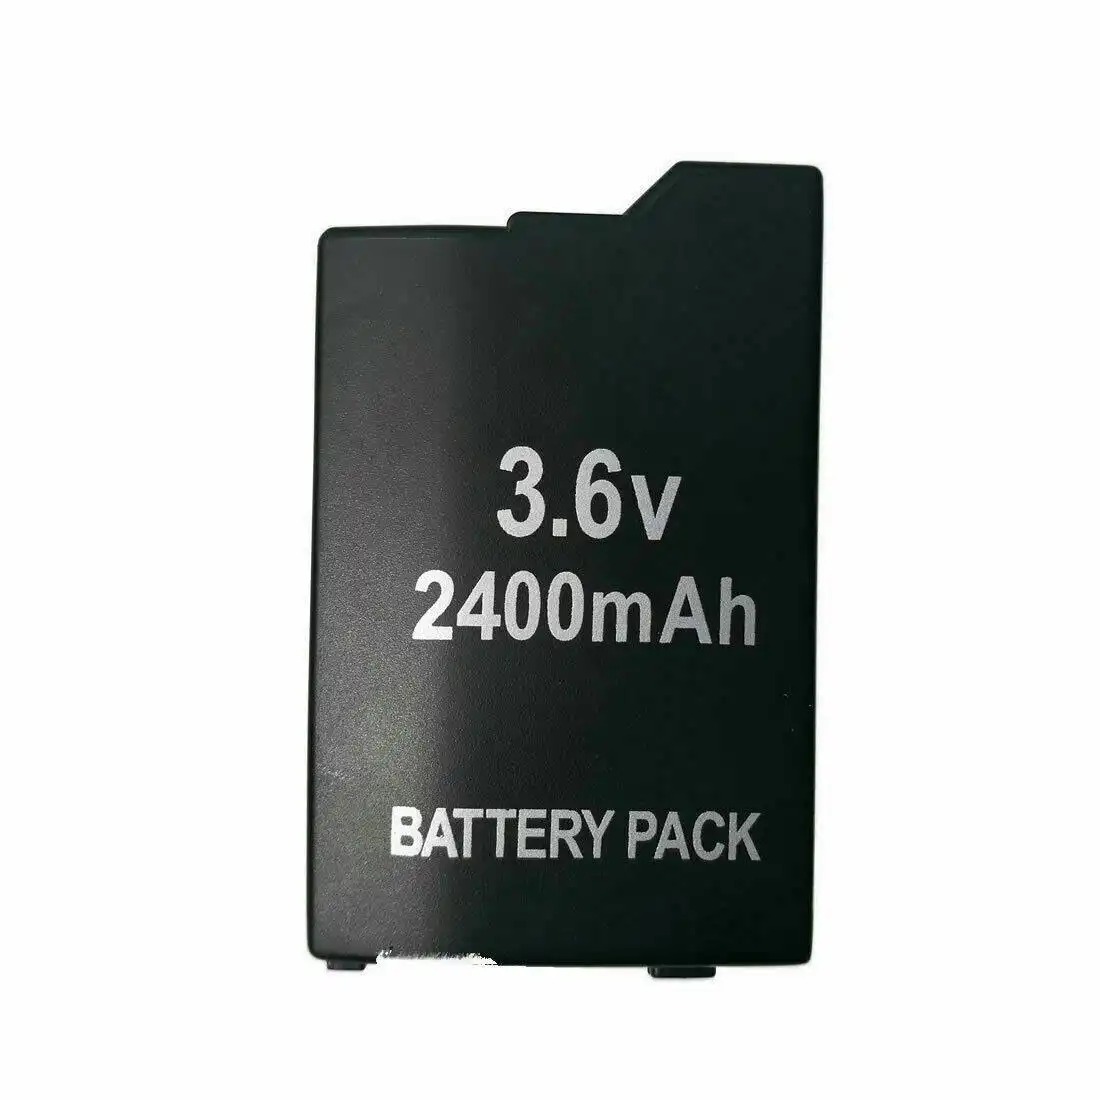 PSP-S110 Rechargeable Battery For Sony PSP-2000,PSP-3000,PSP Lite / Slim